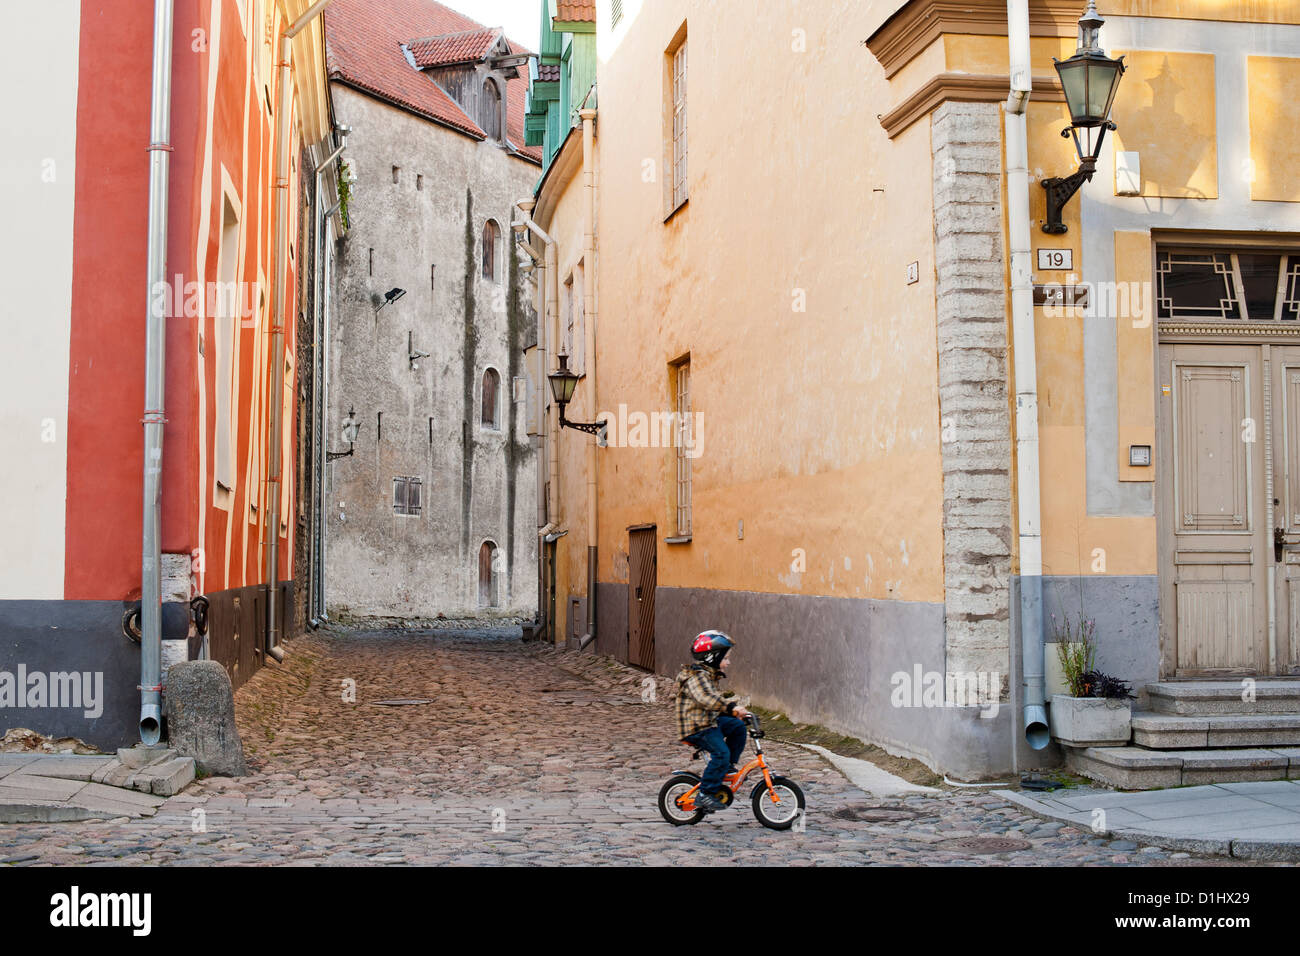 Ein Kleinkind auf dem Fahrrad in Lai-Straße in der Altstadt von Tallinn, der Hauptstadt von Estland. Stockfoto